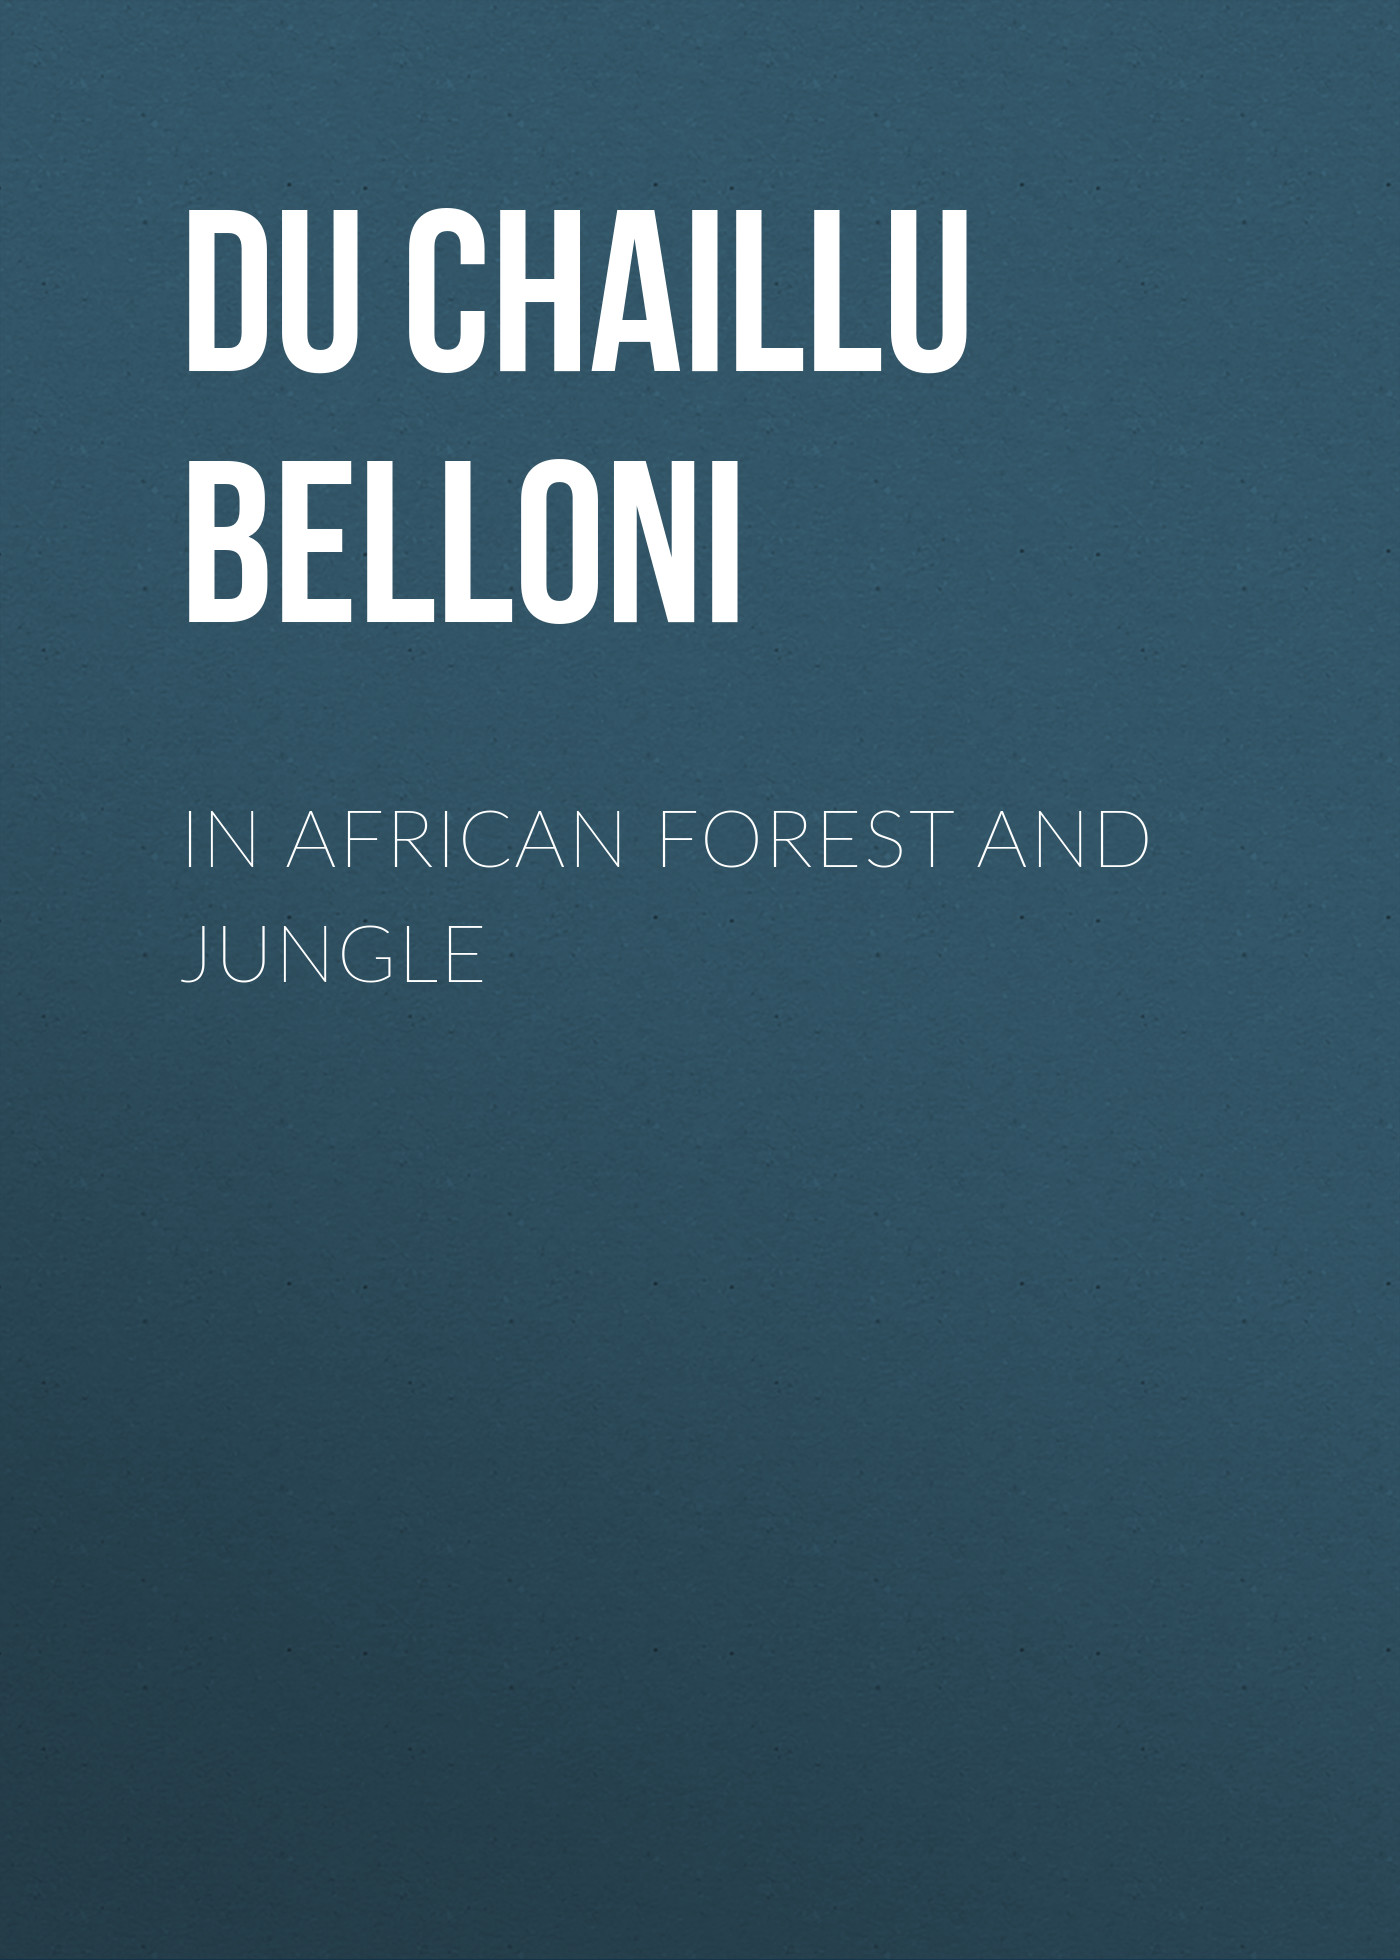 Книга In African Forest and Jungle из серии , созданная Paul Du Chaillu, может относится к жанру Природа и животные, Зарубежная старинная литература, Зарубежная классика. Стоимость электронной книги In African Forest and Jungle с идентификатором 24619501 составляет 0 руб.